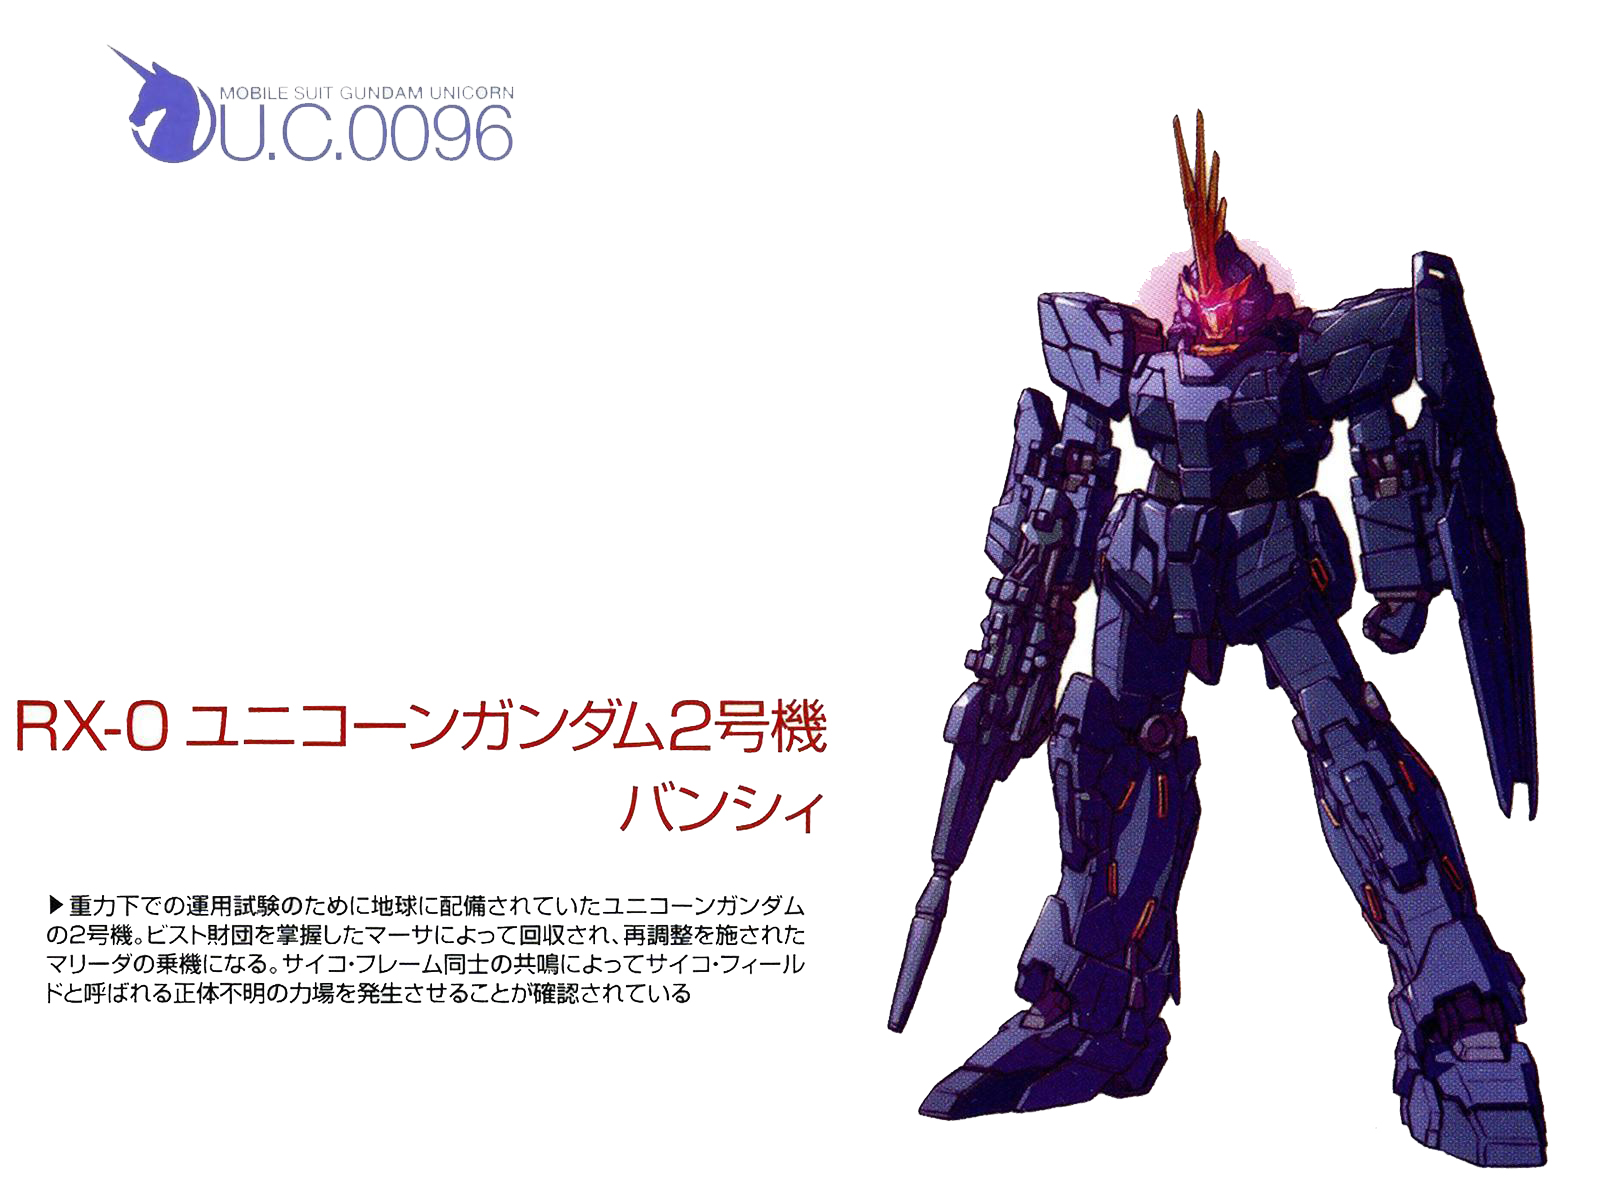 Gundam Gundam Unicorn Banshee Mecha Wallpaper Screening Yande Re